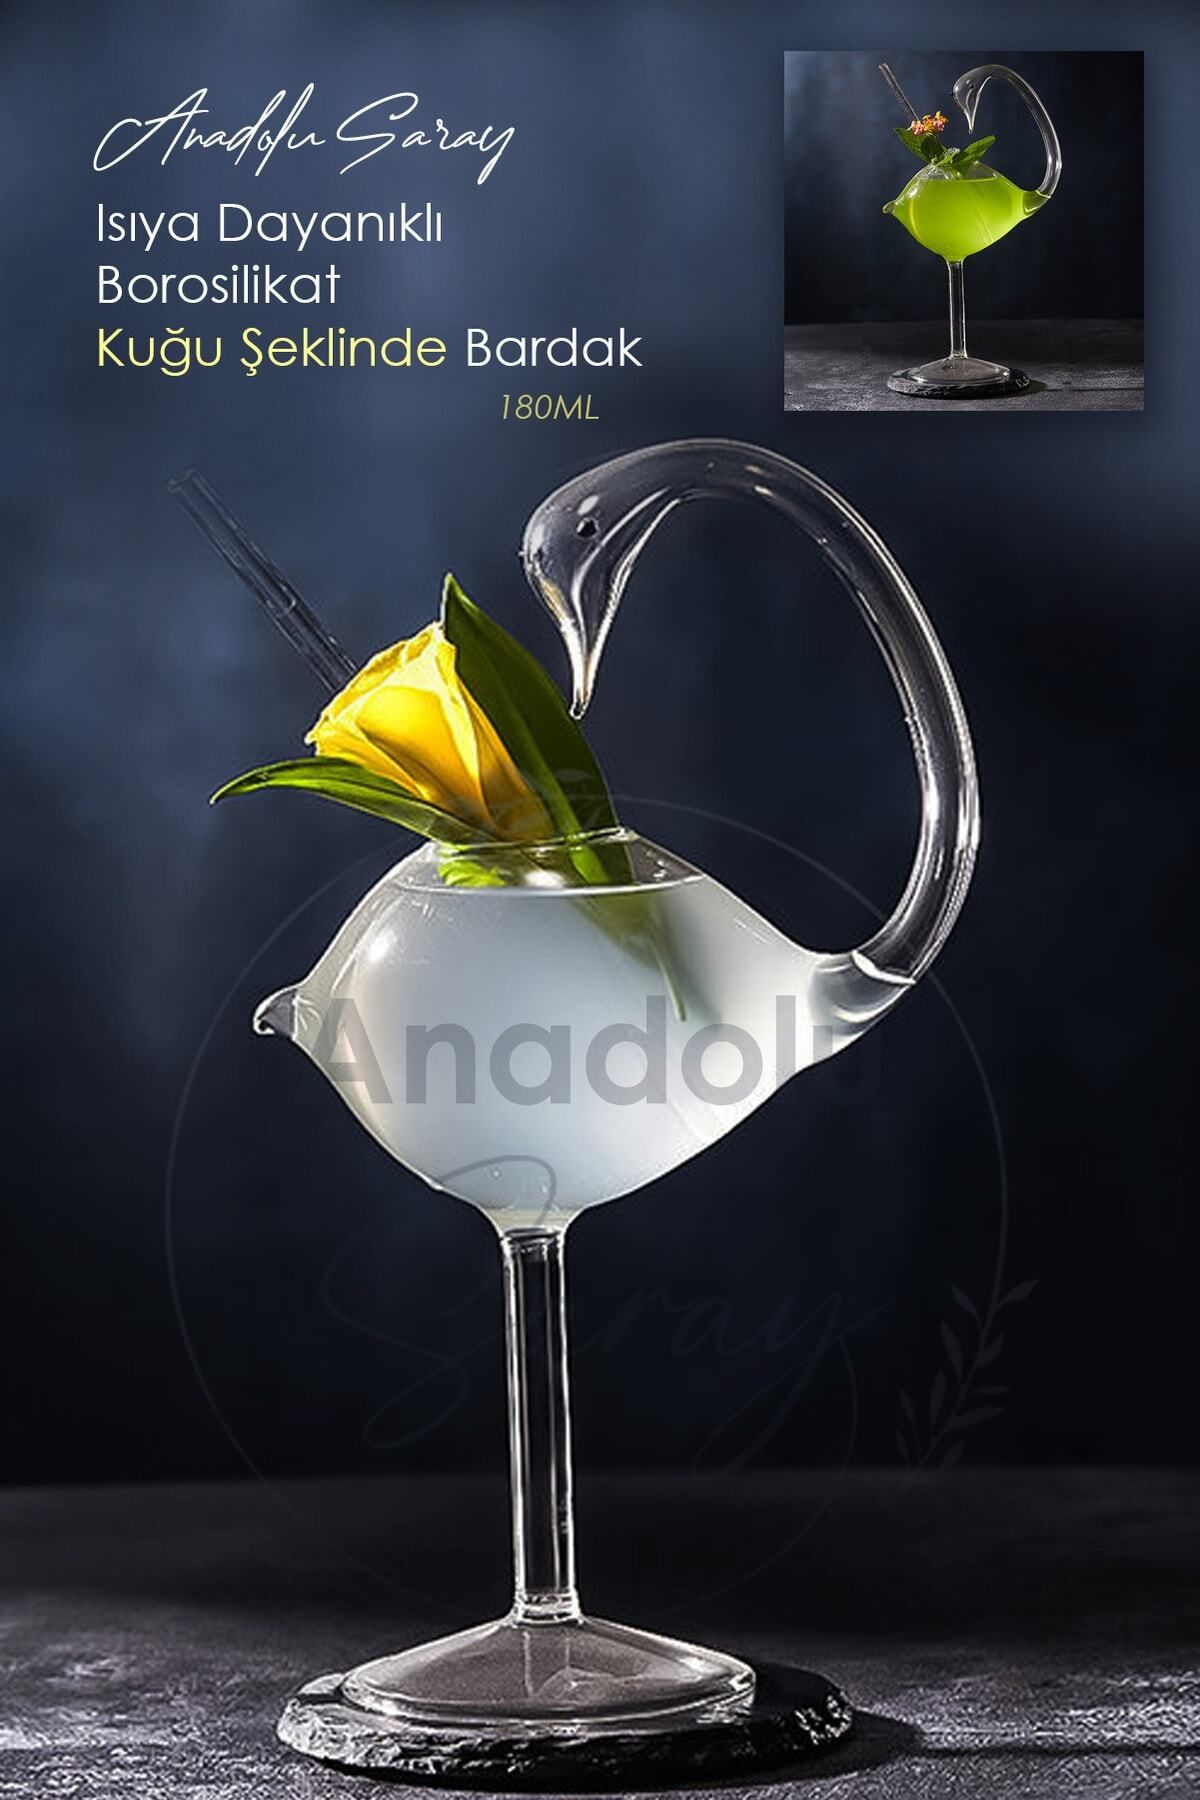 Anadolu Saray Çarşısı Isıya Dayanıklı Borosilikat Kuğu Şeklinde Bardak | Kahve Ve Sunum Kokteyl Bardağı